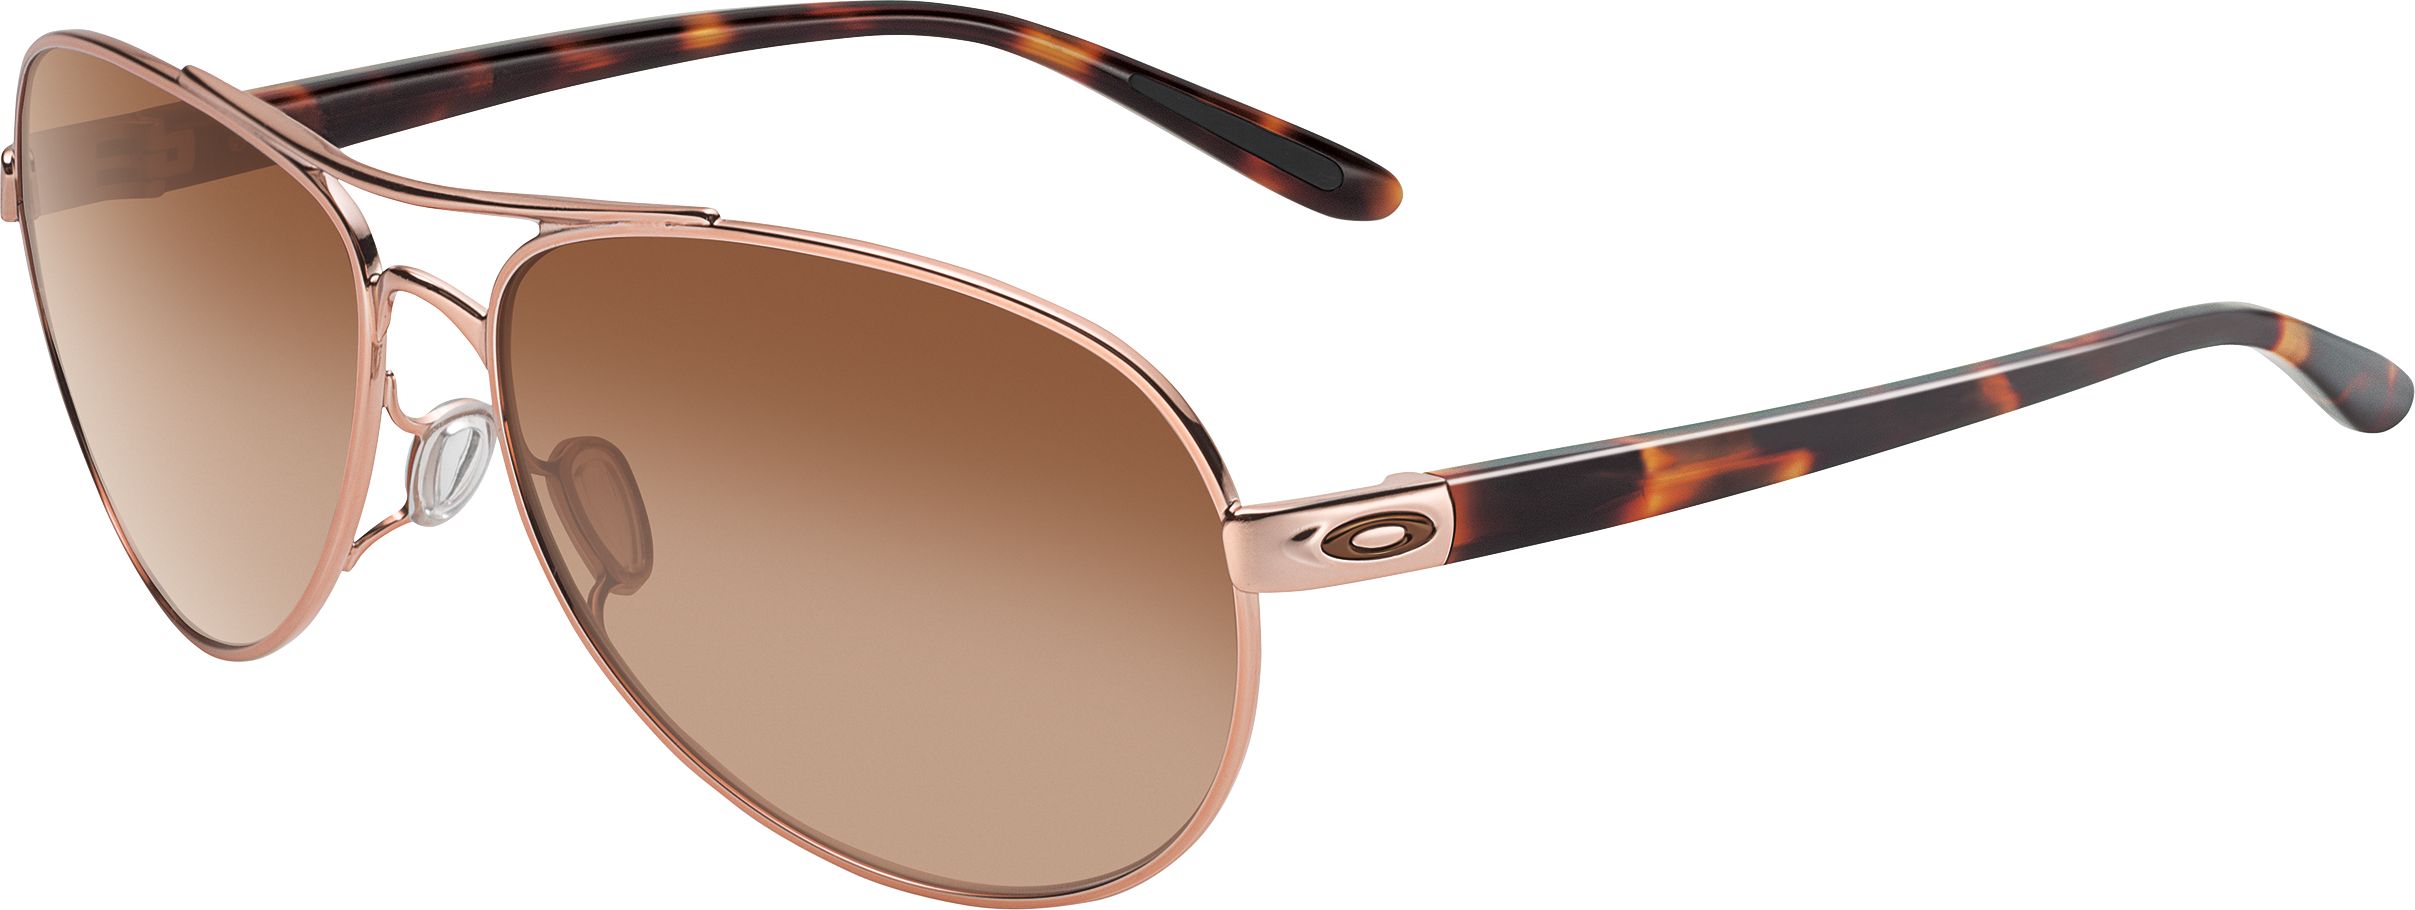 Oakley Men's/Women's Feedback Aviator Sunglasses  Gradient